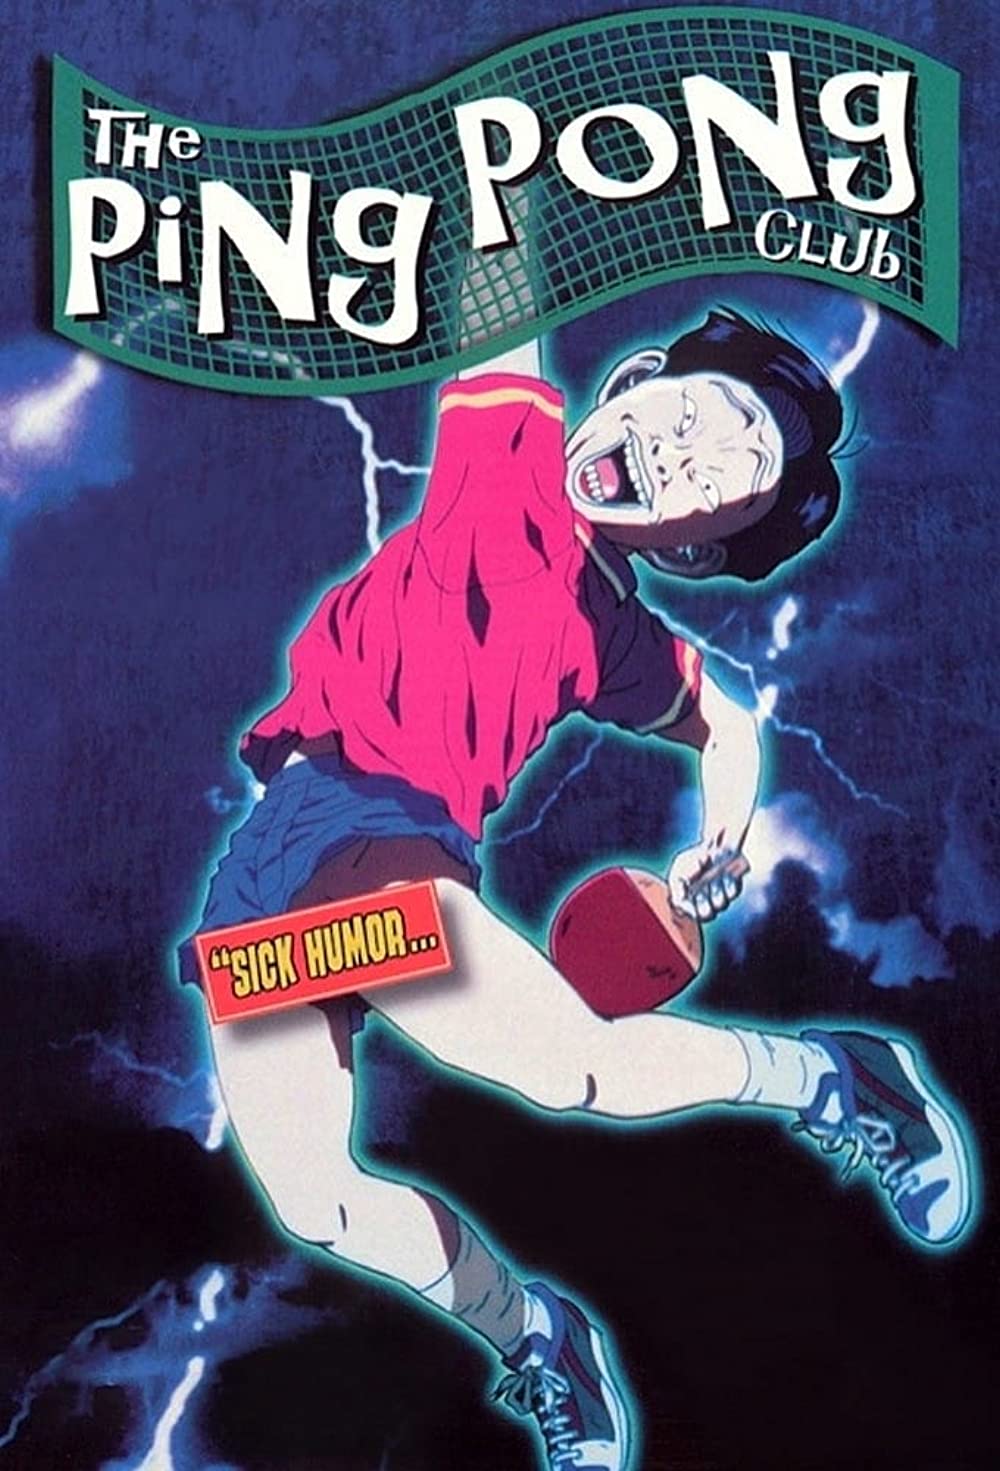 Ping Pong (TV) - Anime News Network